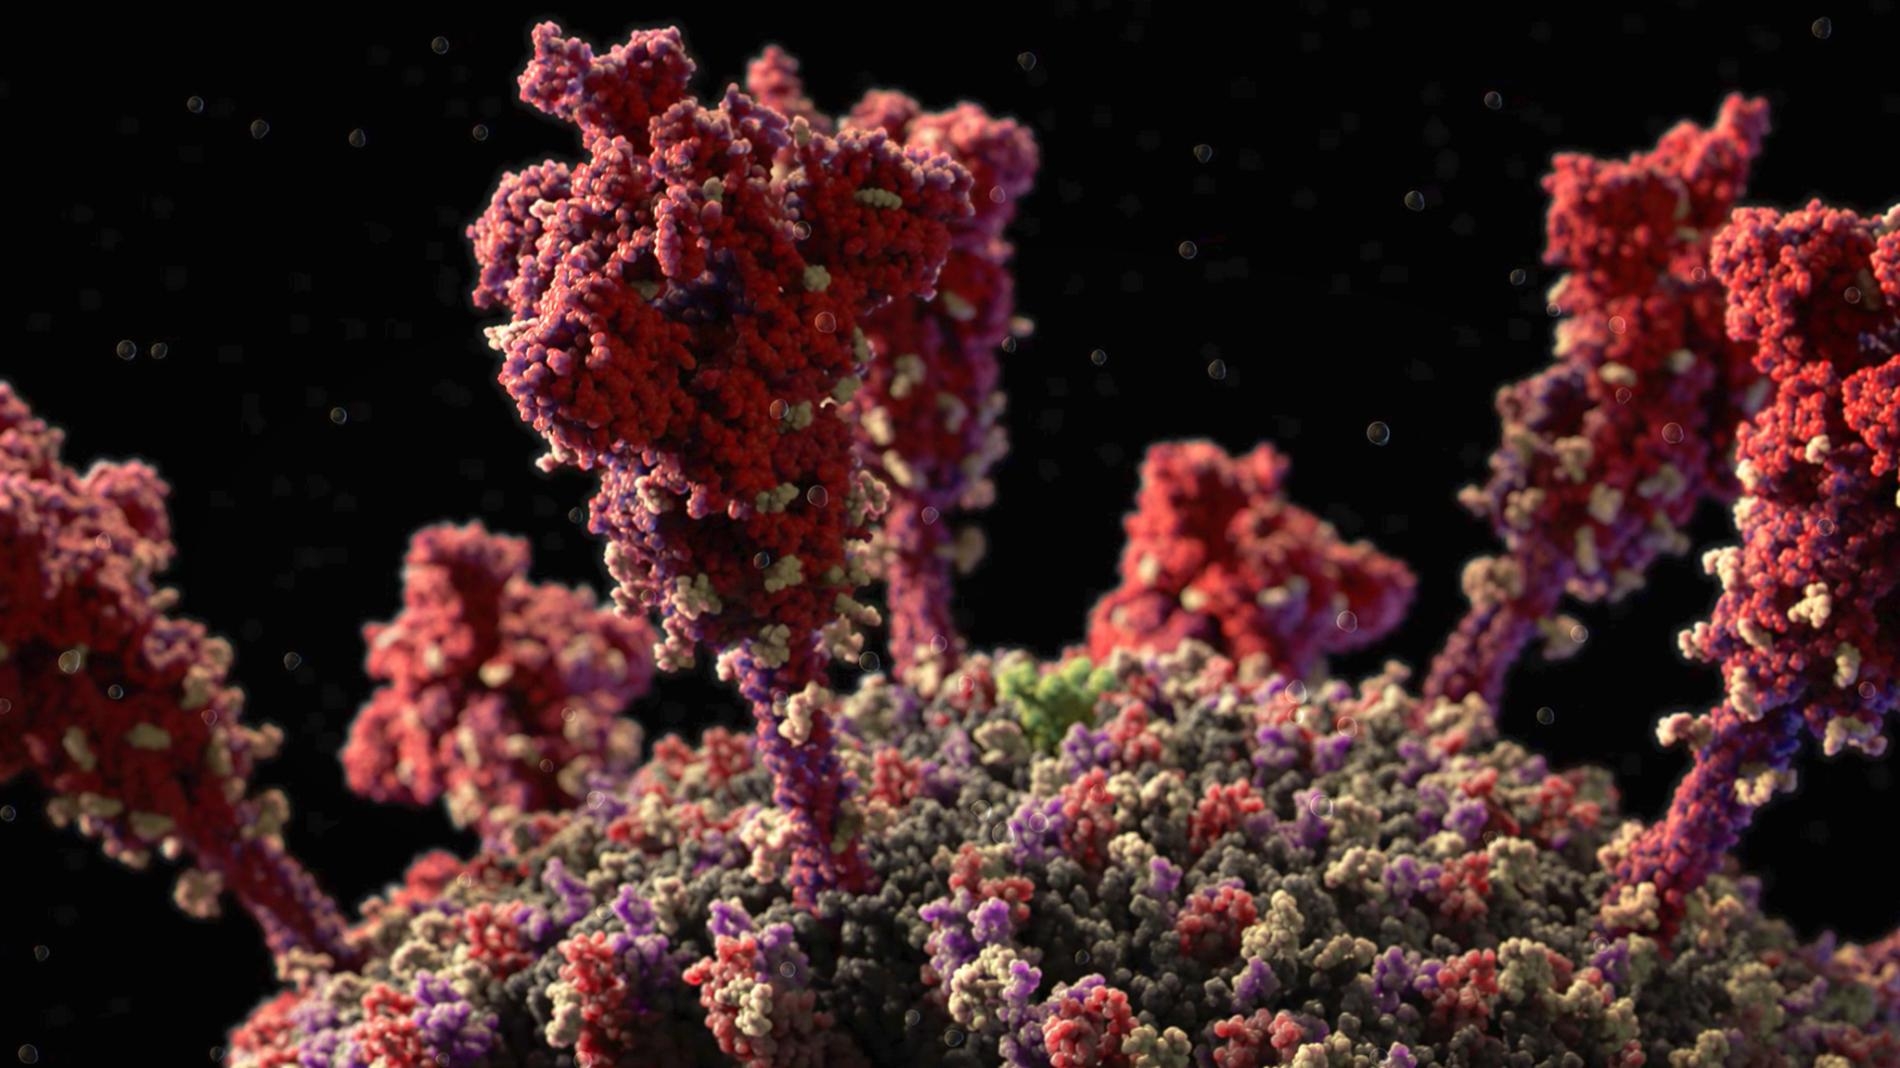 數十個皇冠狀的棘蛋白（紅色）──冠狀病毒因而得名──從病毒表面突出，使病毒得以感染人類細胞。MODEL AT ATOMIC RESOLUTION IN BY VISUAL SCIENCE